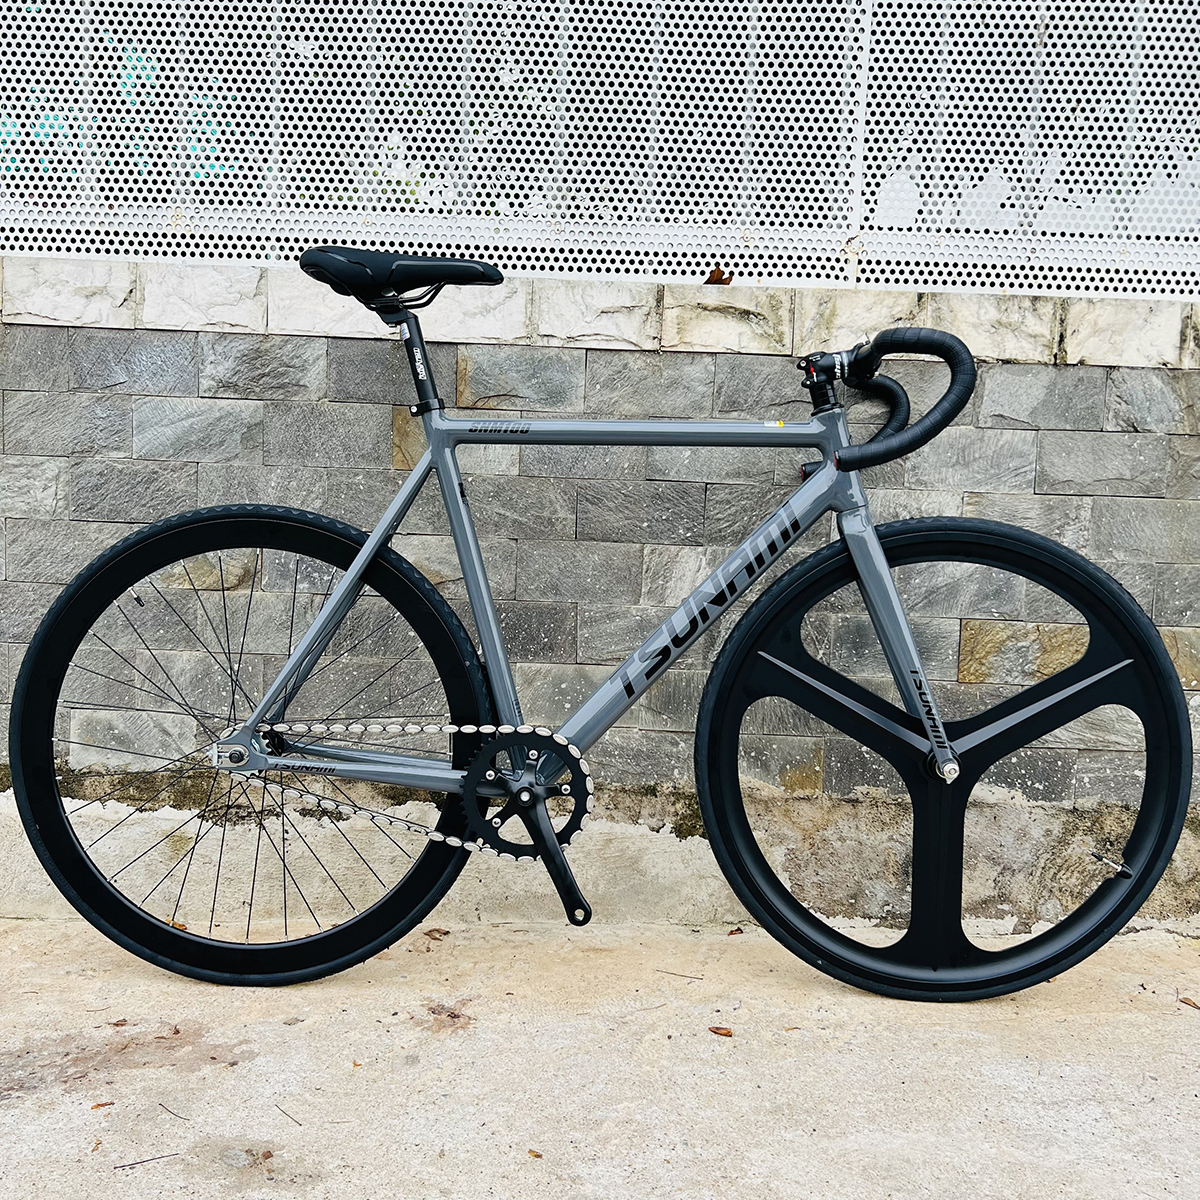 Xe đạp fixed gear TSUNAMI SNM100 nâng cao trước 3 đao đen - Xám xi măng